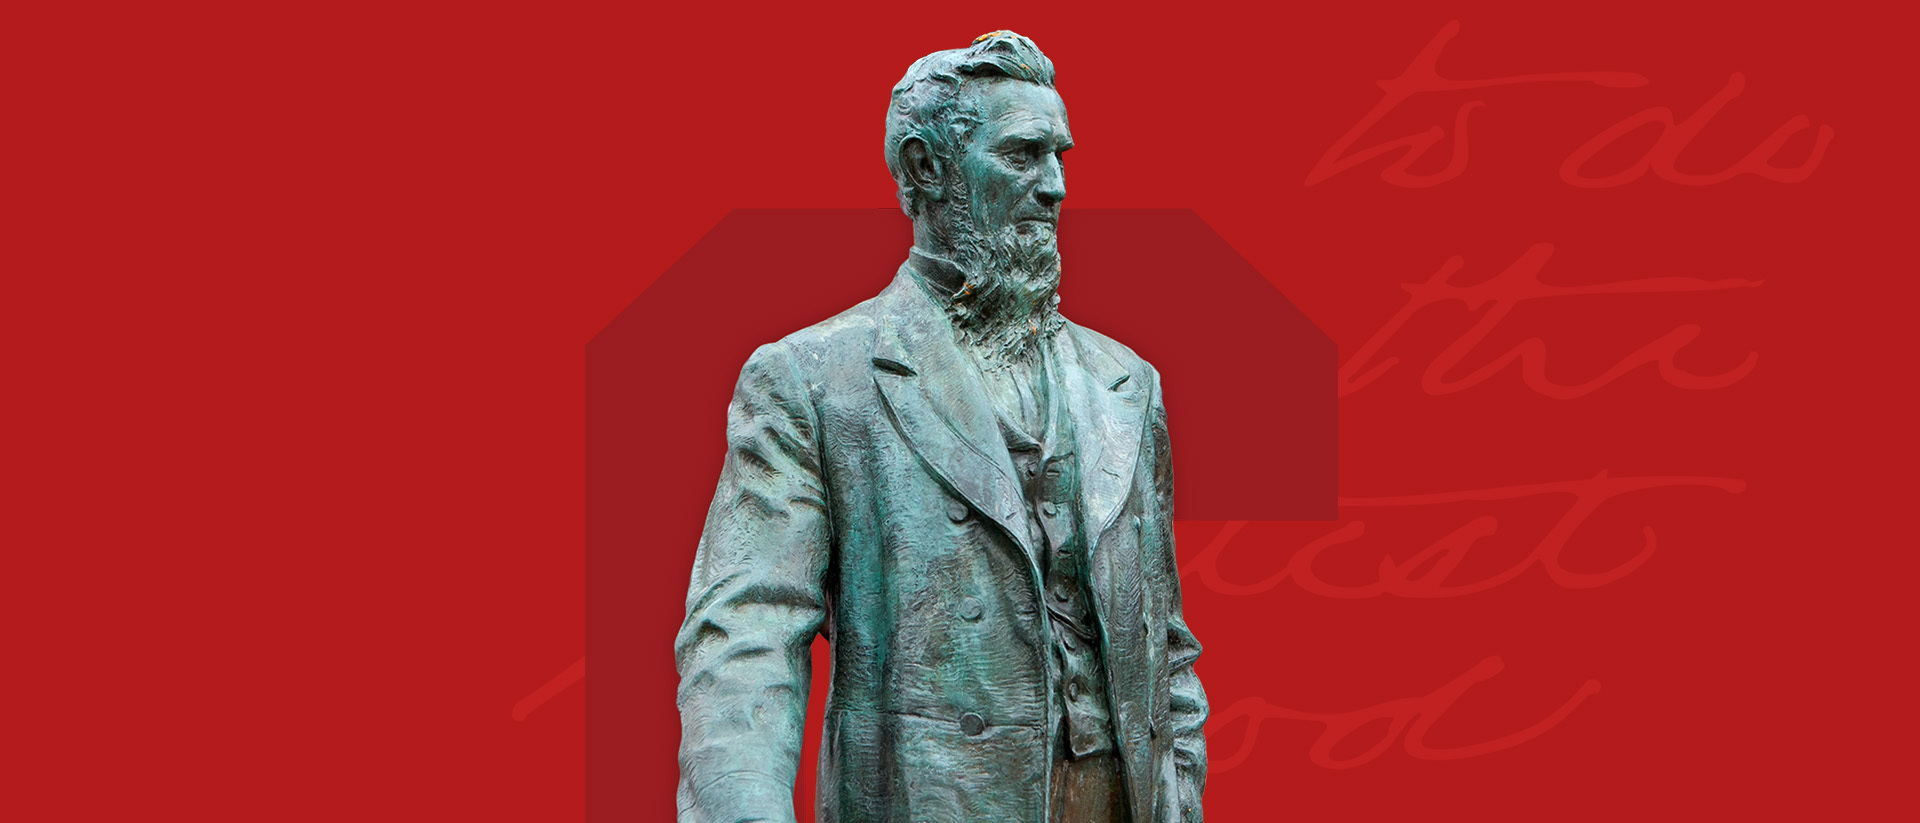 康奈尔雕像强加在红色背景的大型浮动字母C(康奈尔大学)。文本在后台说“做最大的好”,是实际在康奈尔的笔迹。